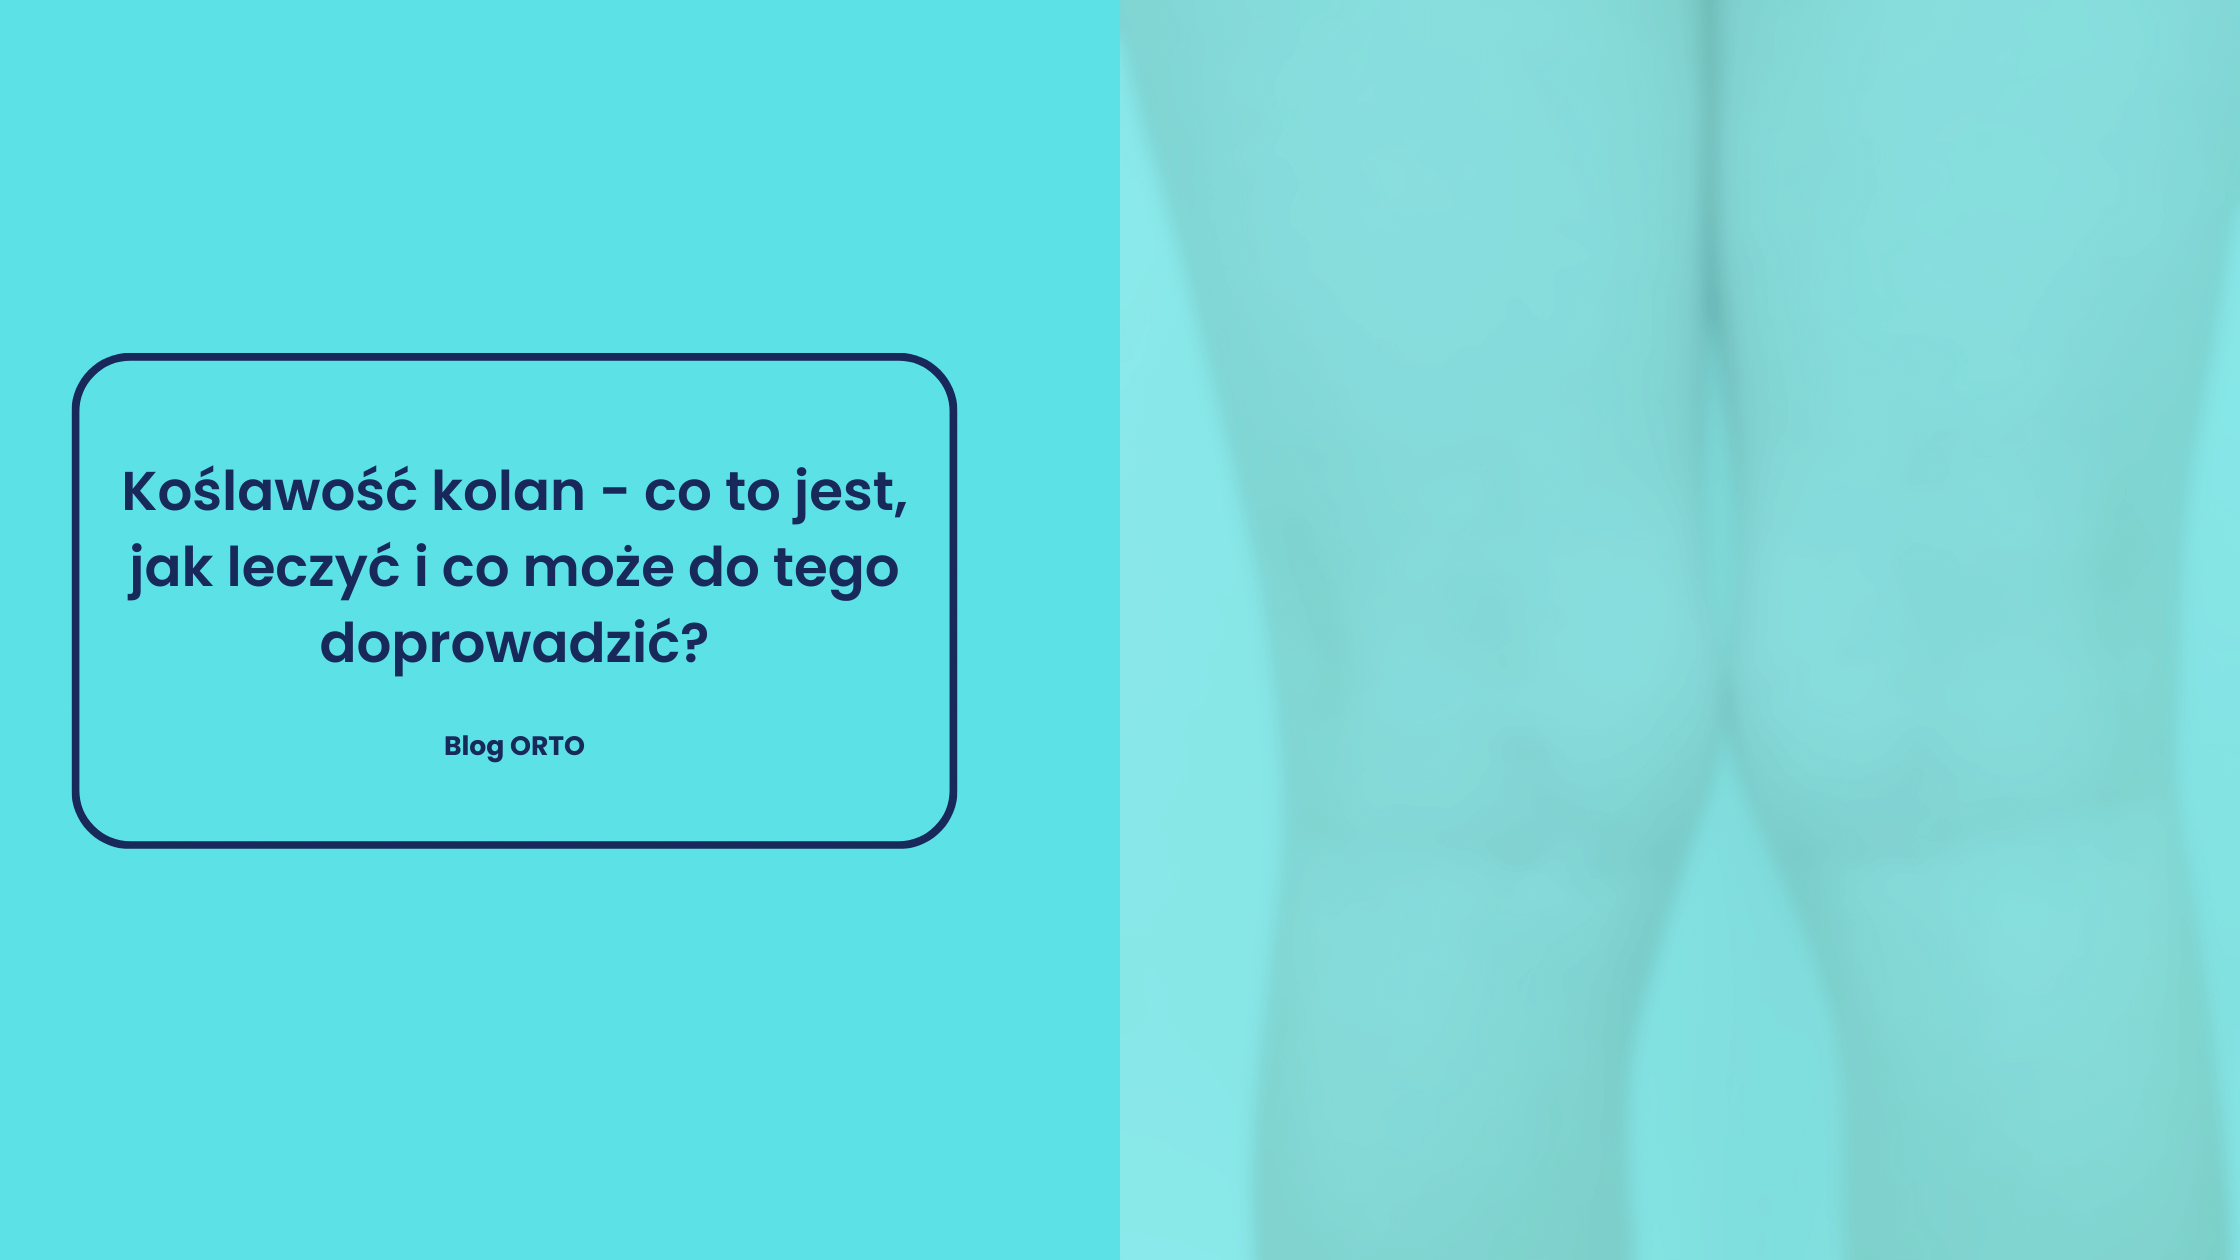 Koślawość kolan – co to jest, jak leczyć i co może do tego doprowadzić?